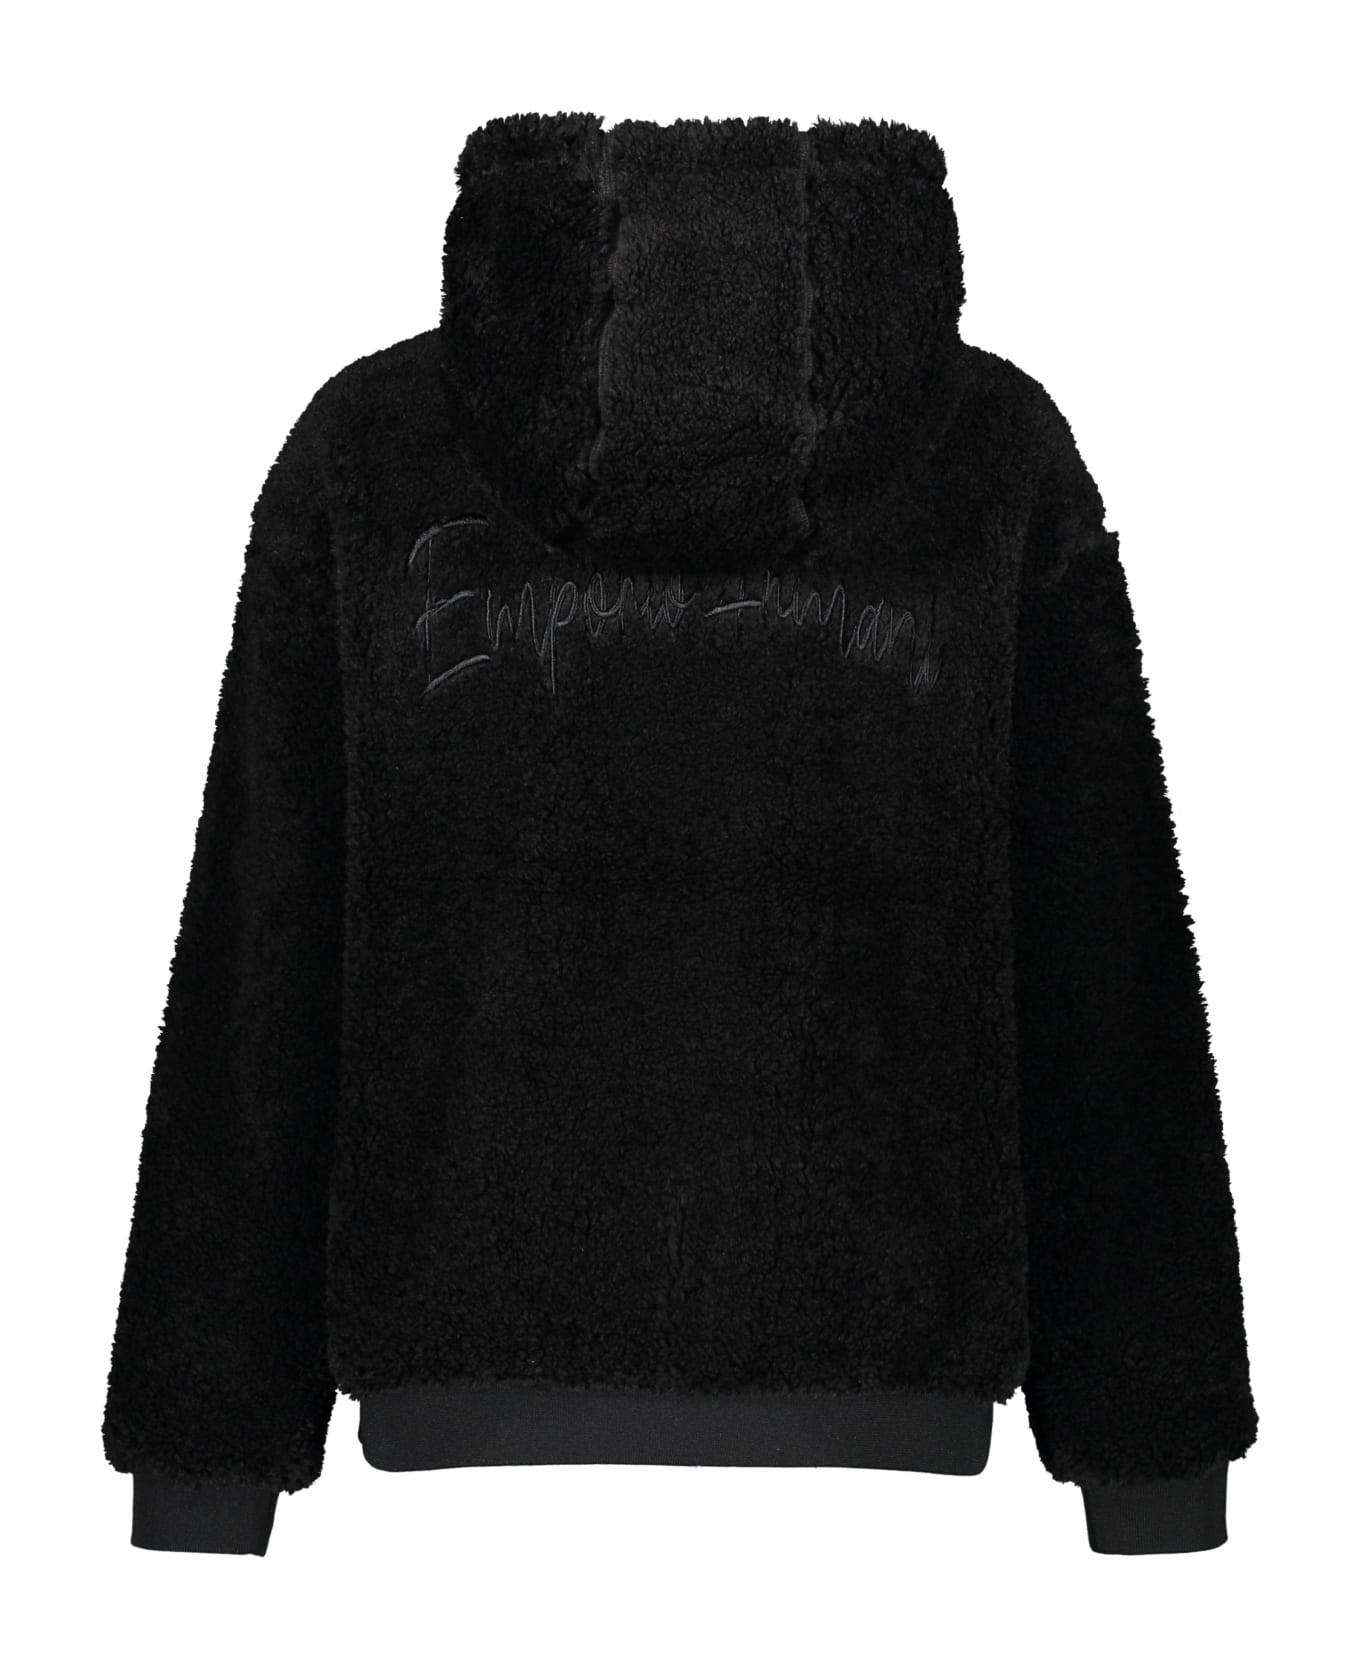 Emporio Armani Reversible Jacket - black